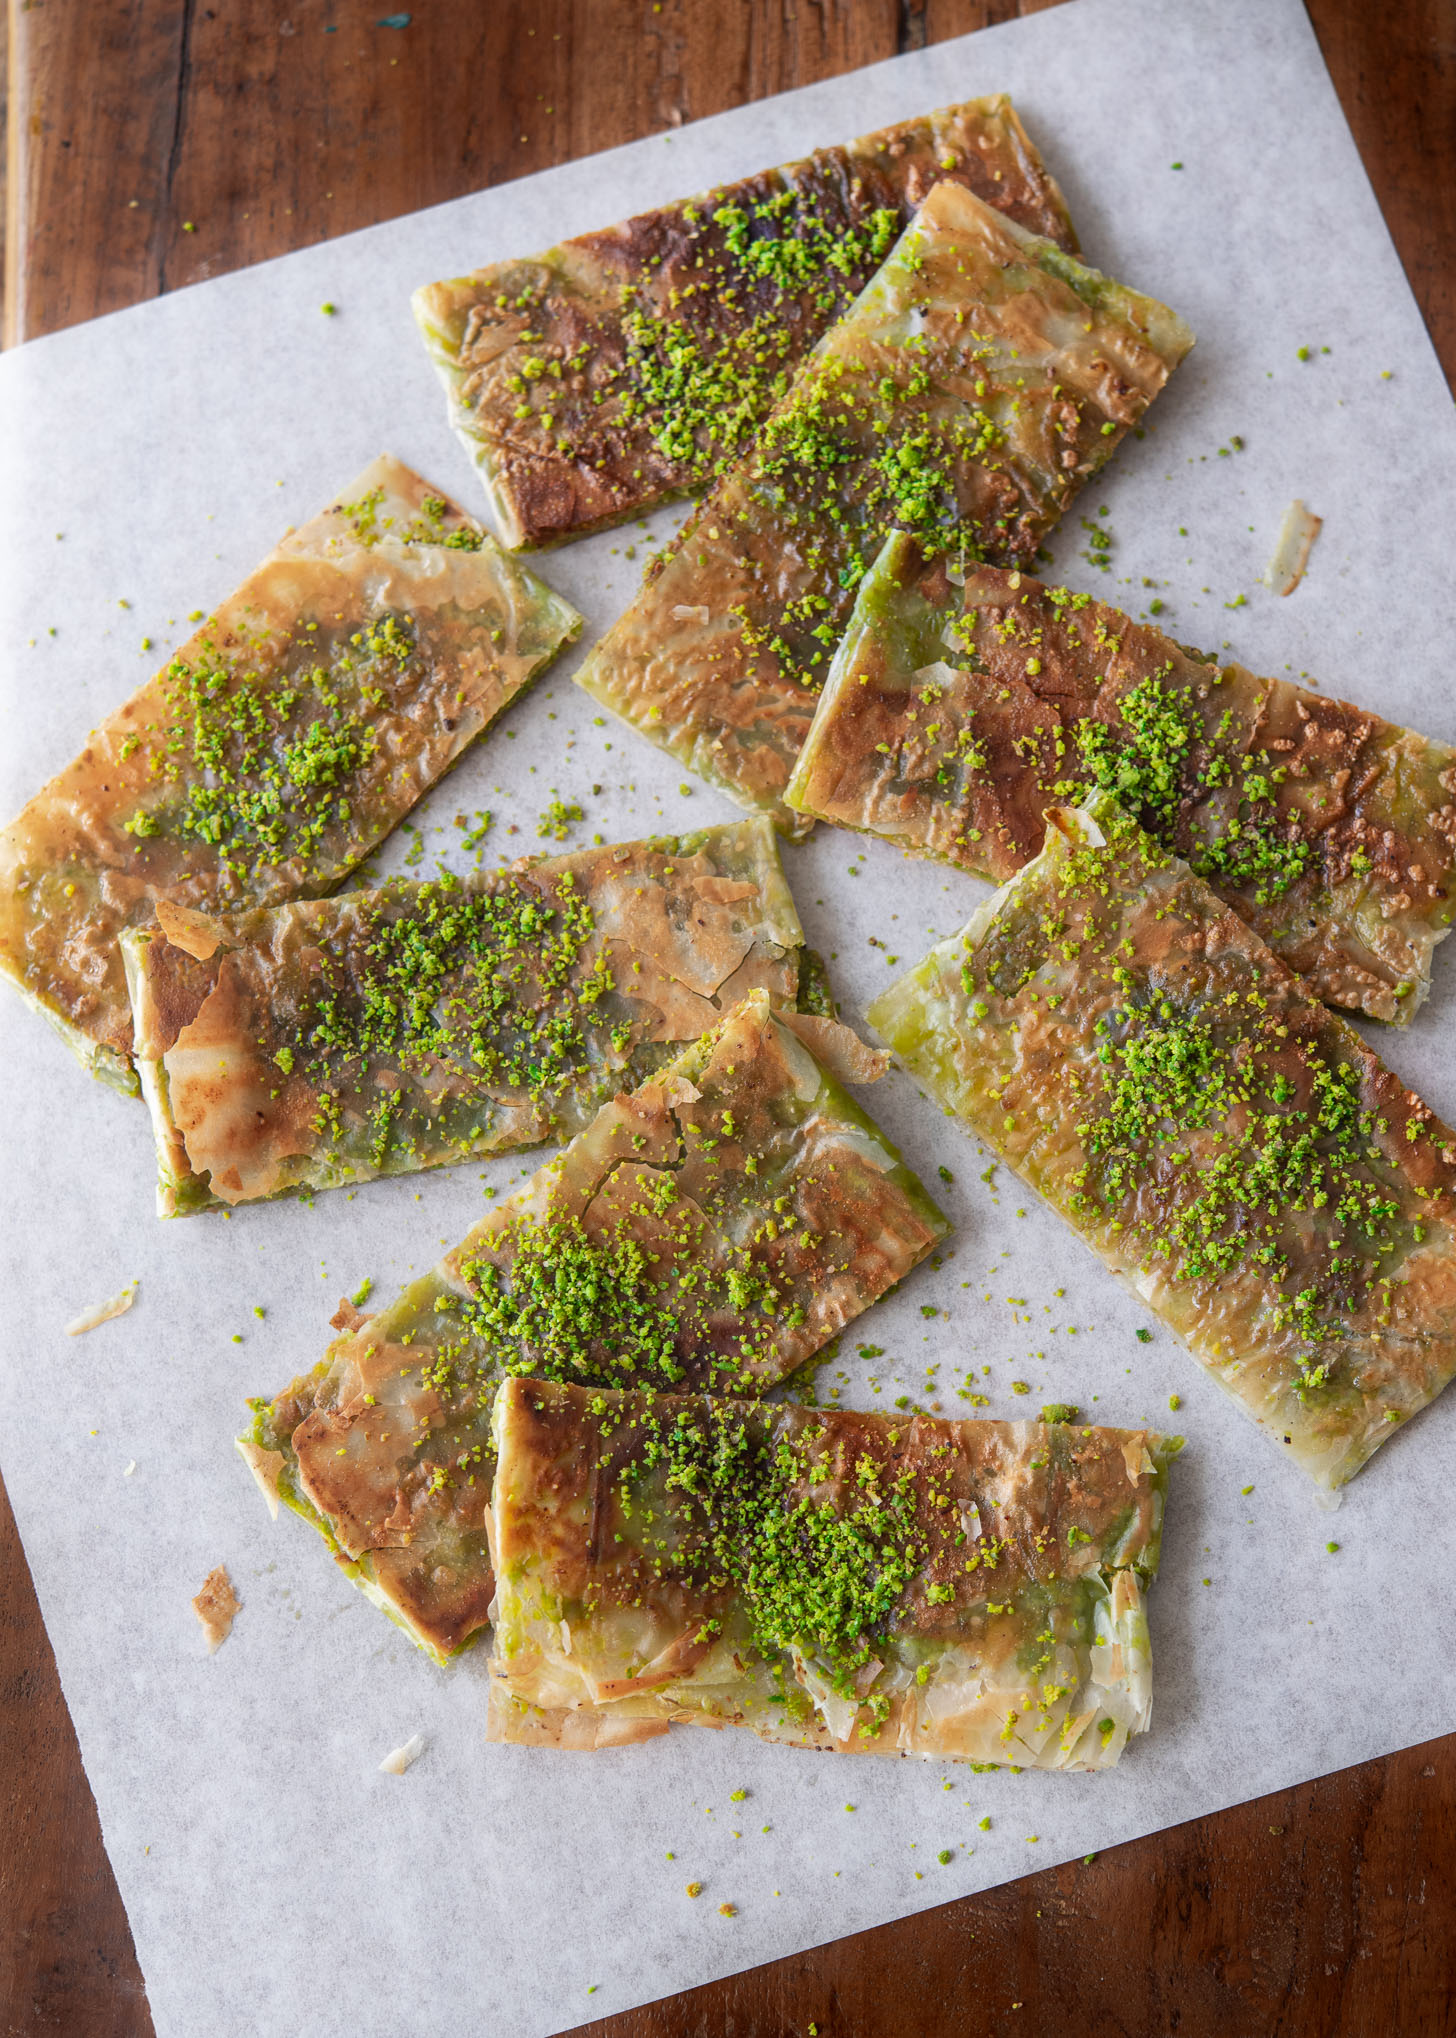 Turkish pistachio dessert slices garnished with ground pistachio nut.